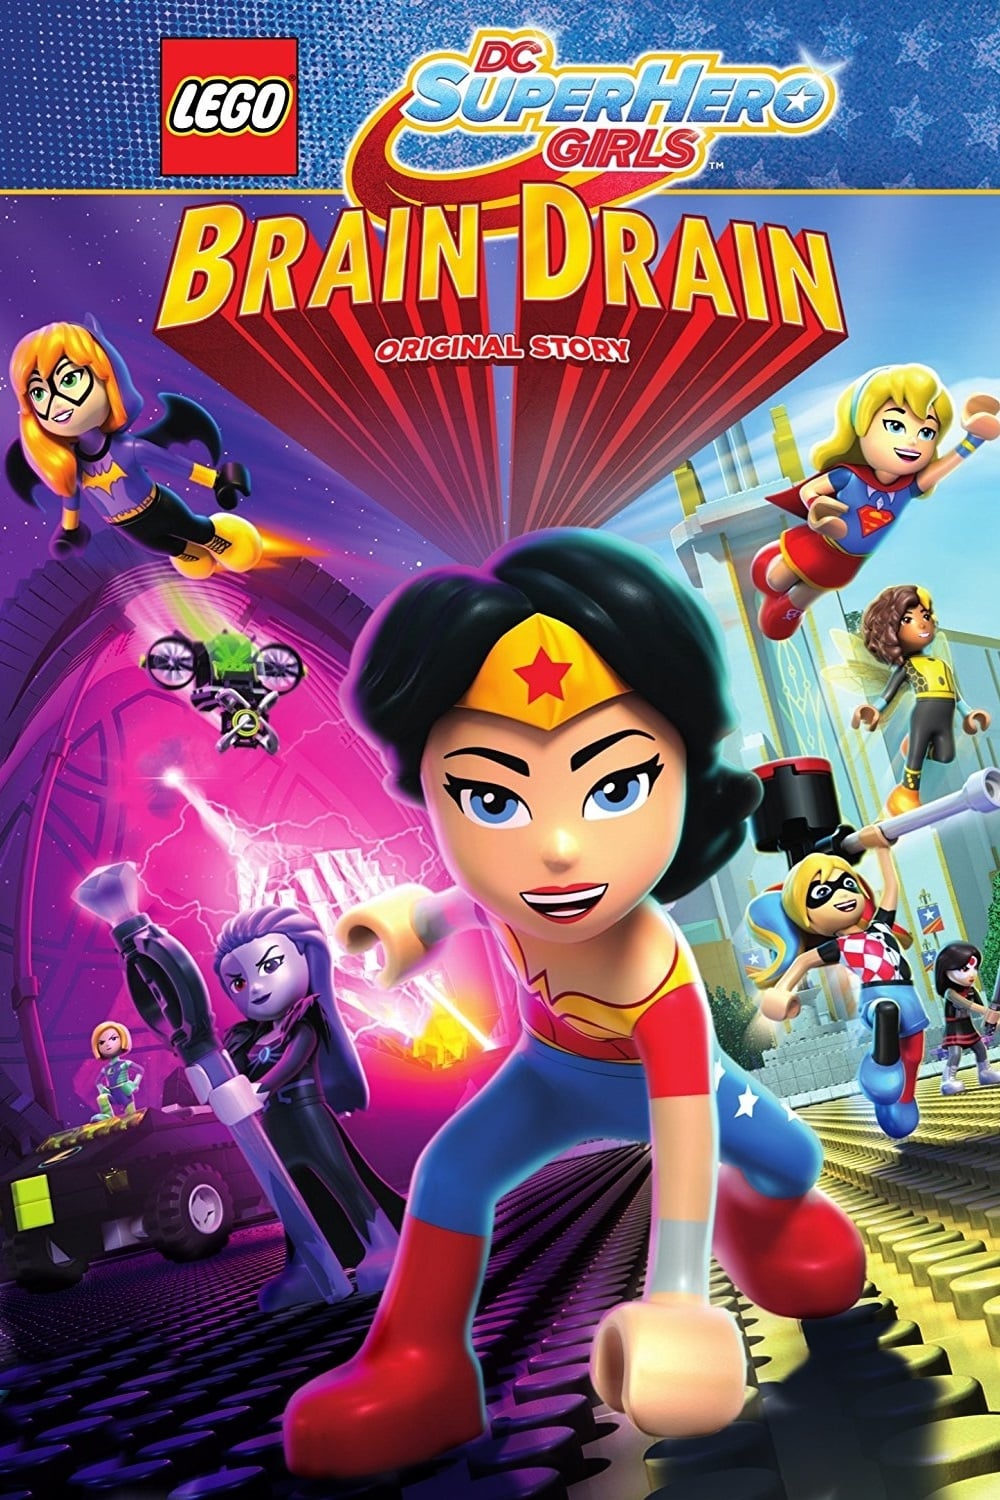 ดูหนังออนไลน์ฟรี Lego DC Super Hero Girls Brain Drain (2017) เลโก้ แก๊งค์สาว ดีซีซูเปอร์ฮีโร่